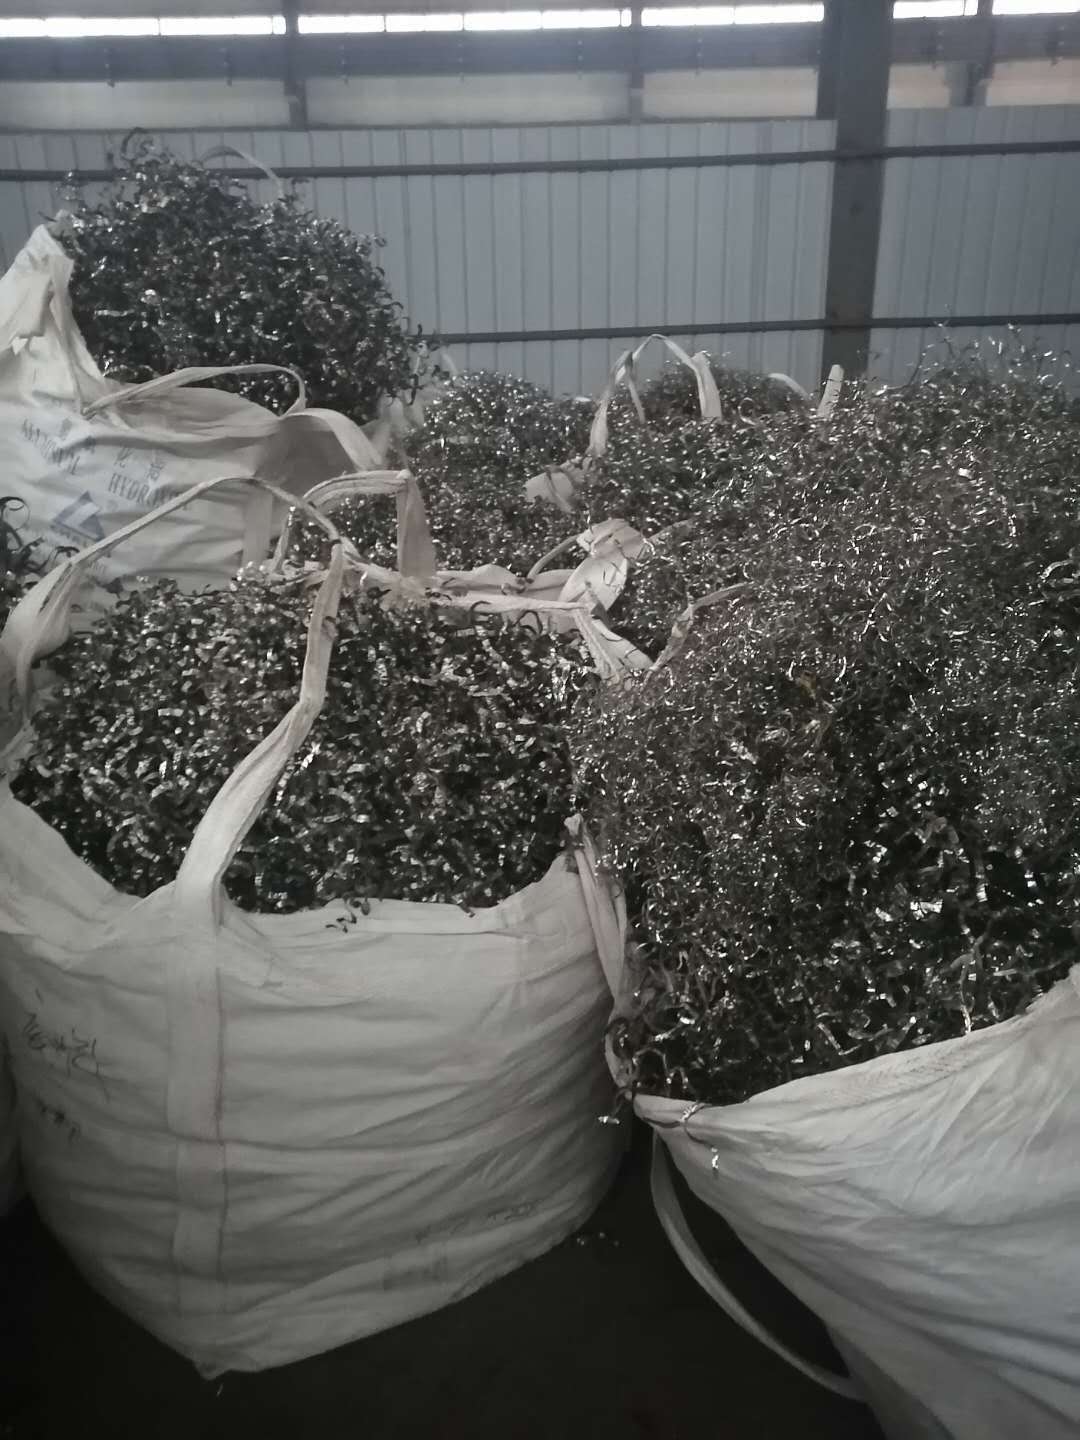 綦江回收钛多少钱一斤